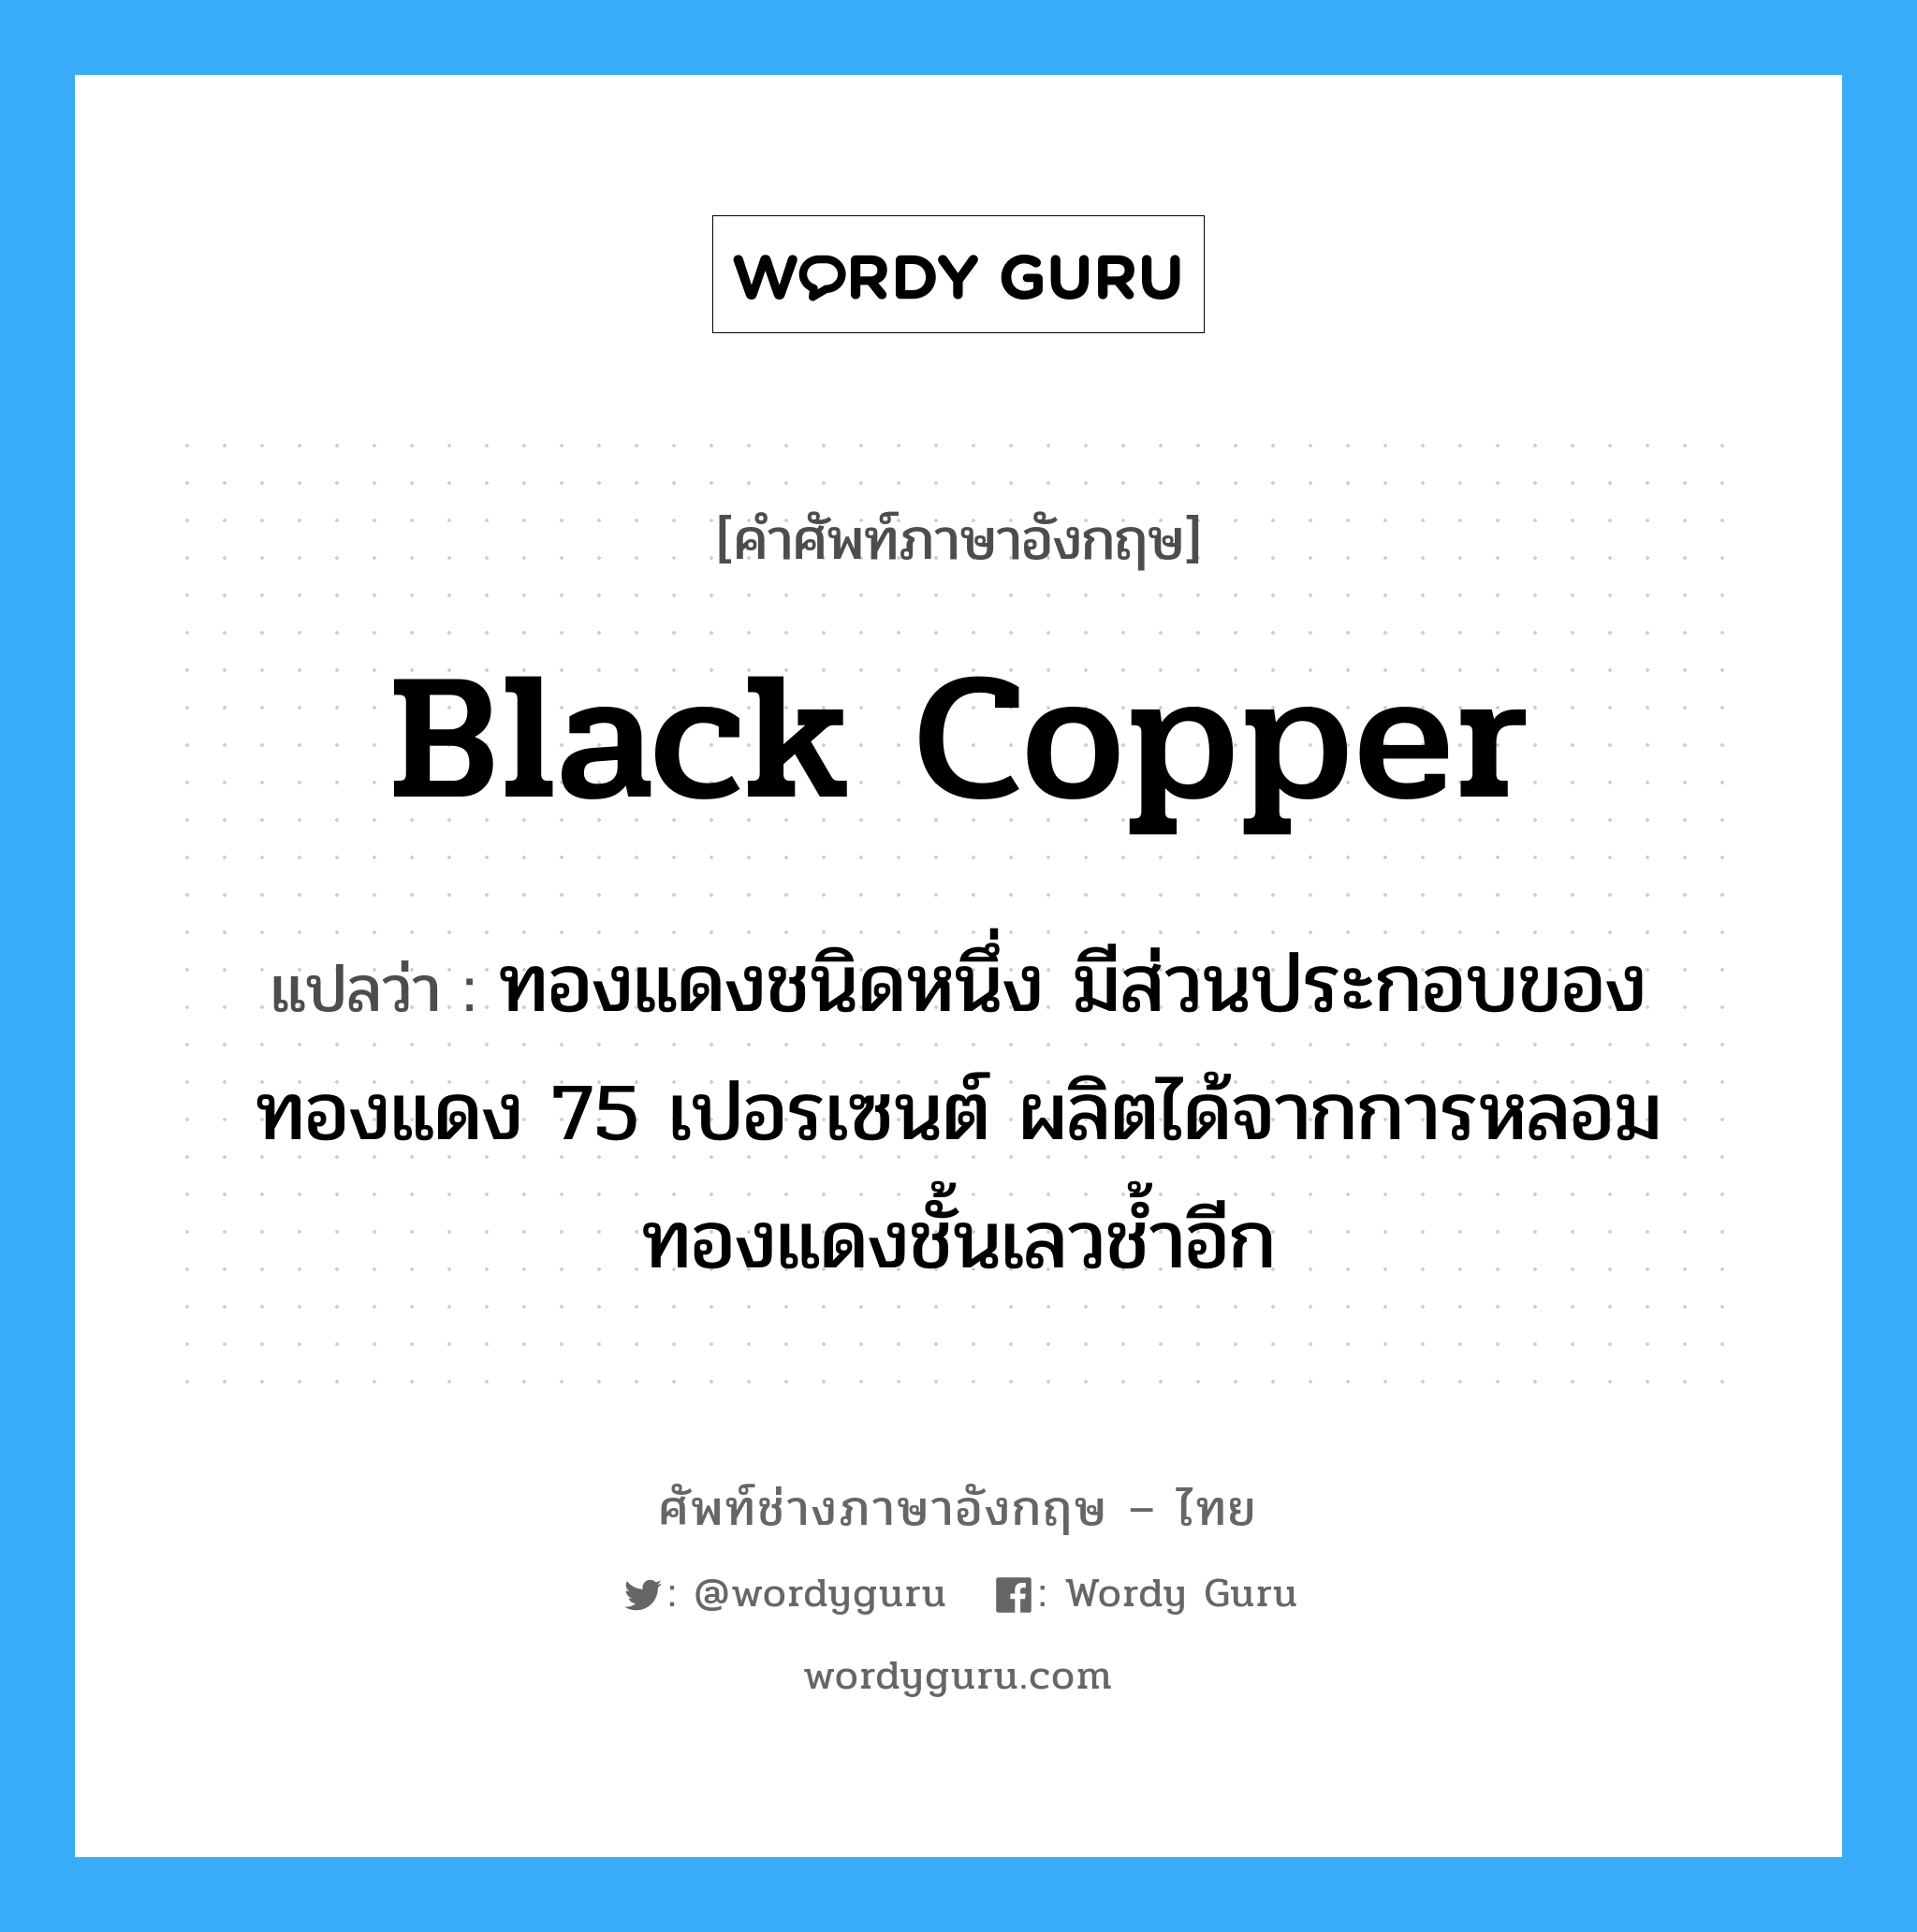 black copper แปลว่า?, คำศัพท์ช่างภาษาอังกฤษ - ไทย black copper คำศัพท์ภาษาอังกฤษ black copper แปลว่า ทองแดงชนิดหนึ่ง มีส่วนประกอบของทองแดง 75 เปอรเซนต์ ผลิตได้จากการหลอมทองแดงชั้นเลวช้ำอีก